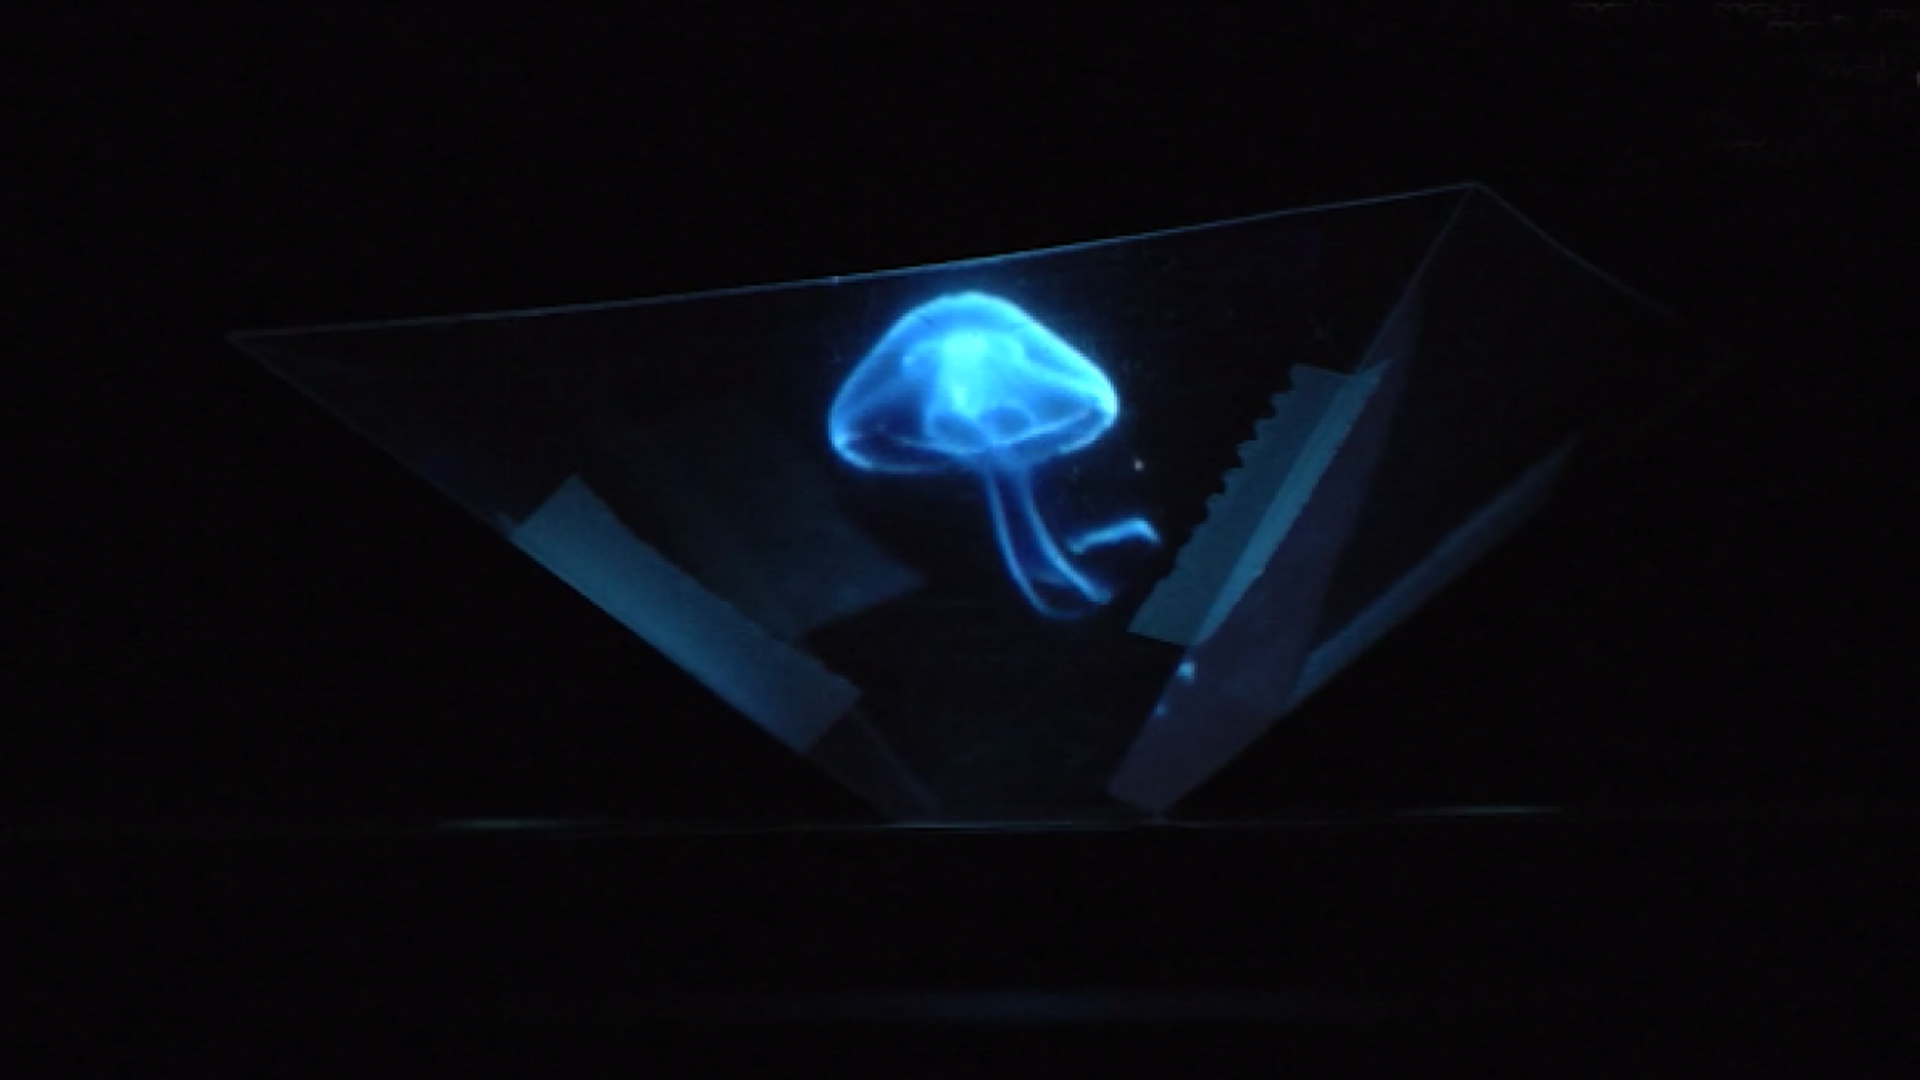 ira Correctamente candidato Cómo crear un holograma casero? - Fundación Aquae